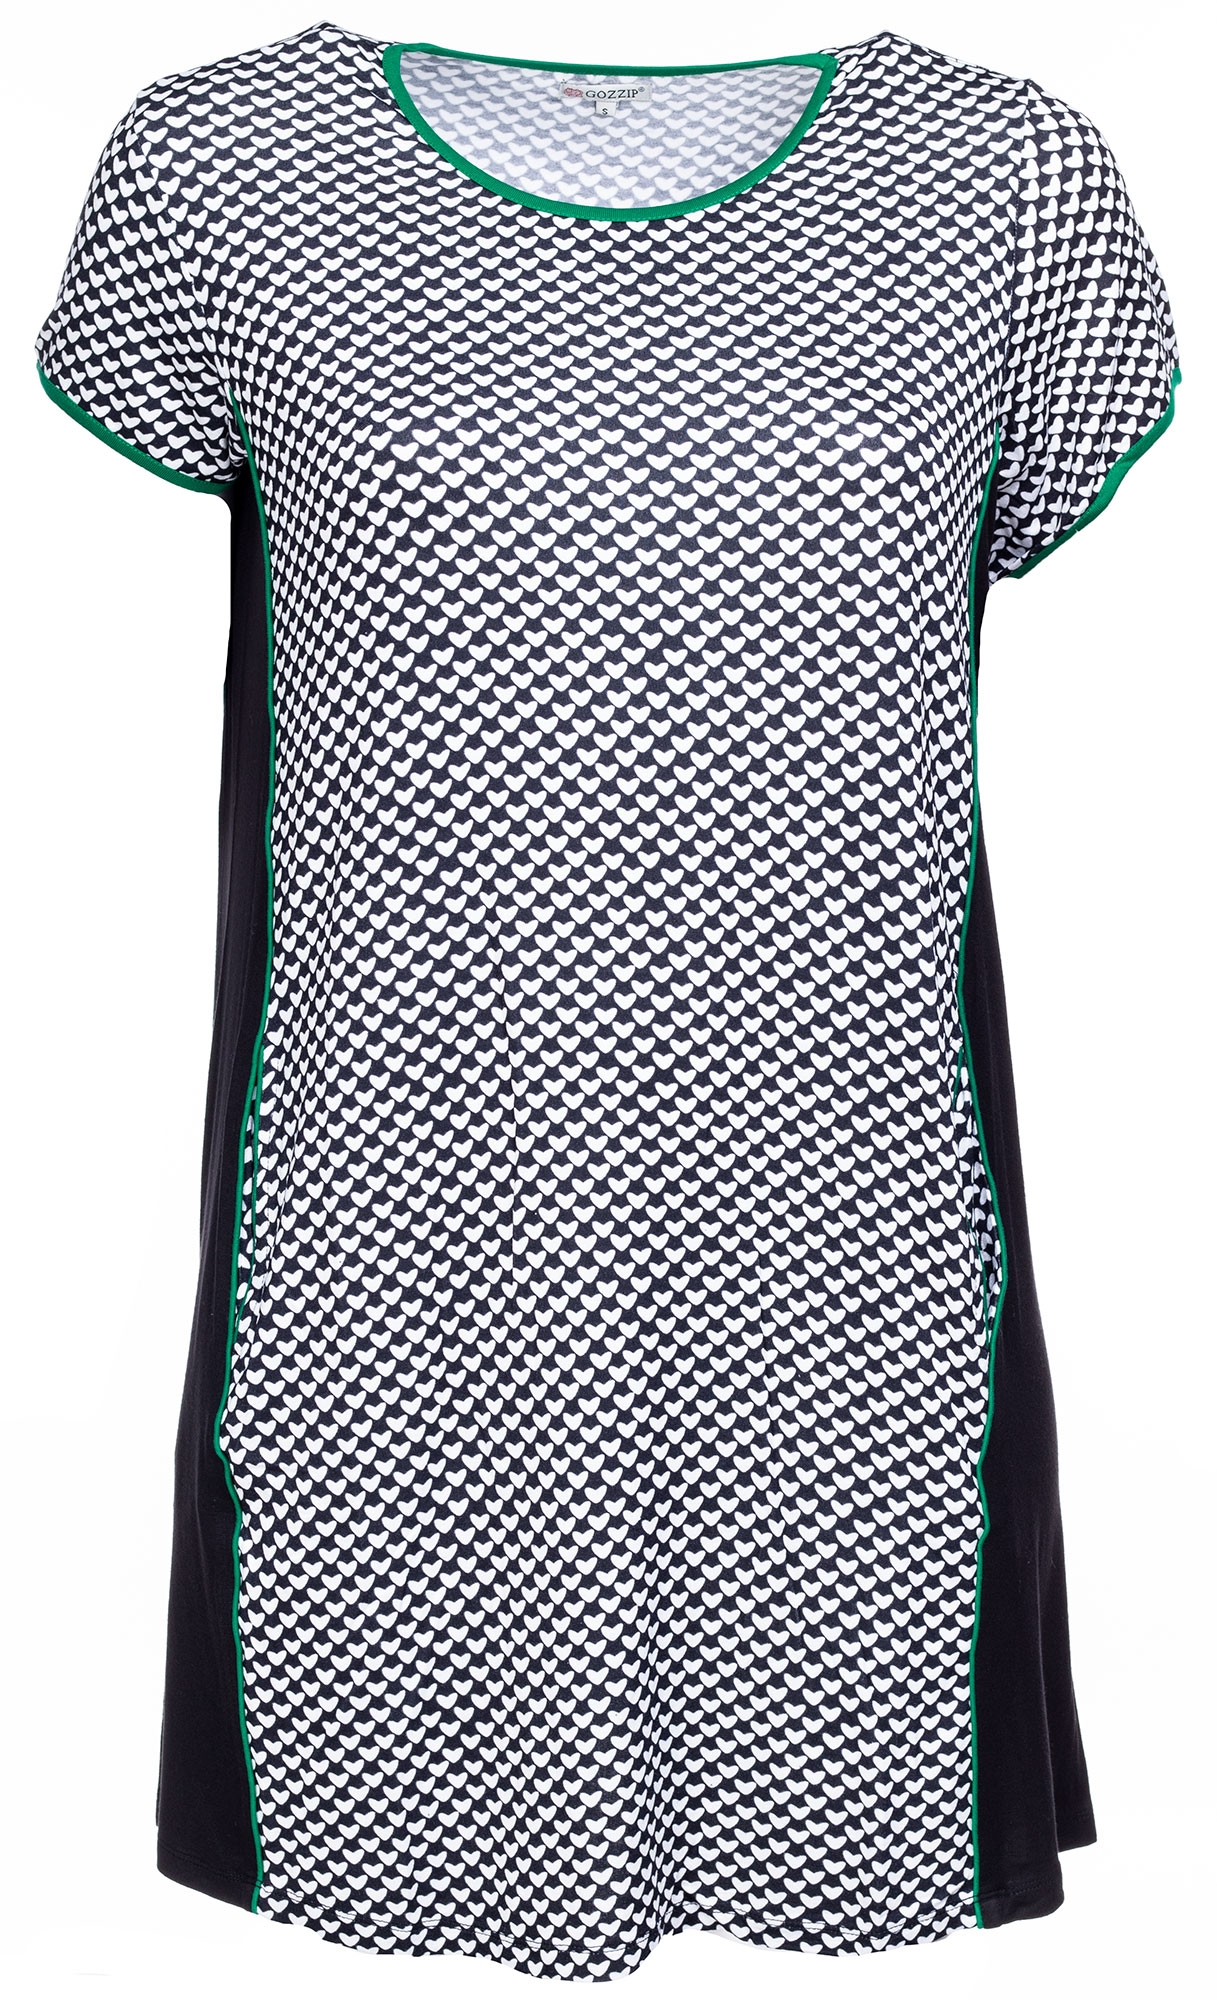 Billede af Sort / hvid printet tunika kjole med grønne detaljer